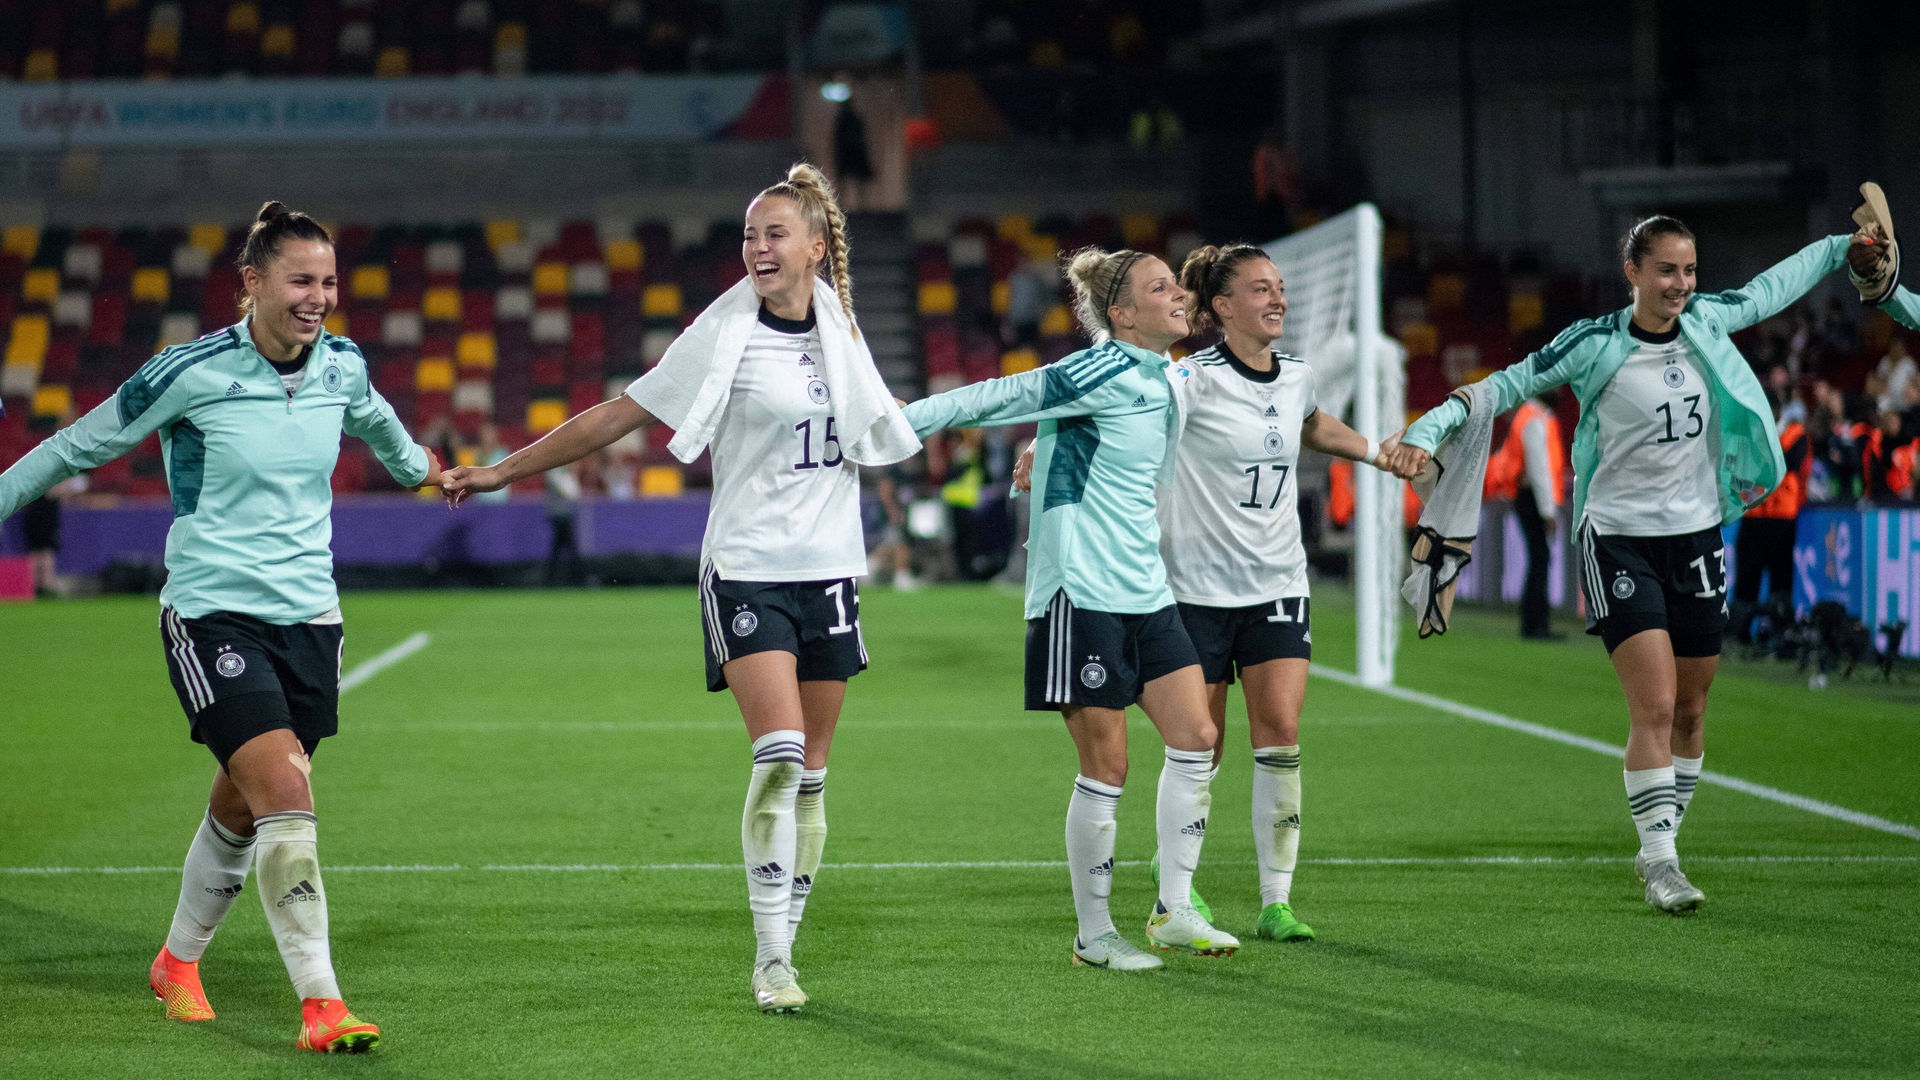 Millionen verfolgen die Fußball-EM der Frauen - Nur ein Hype oder mehr? - Nachrichten